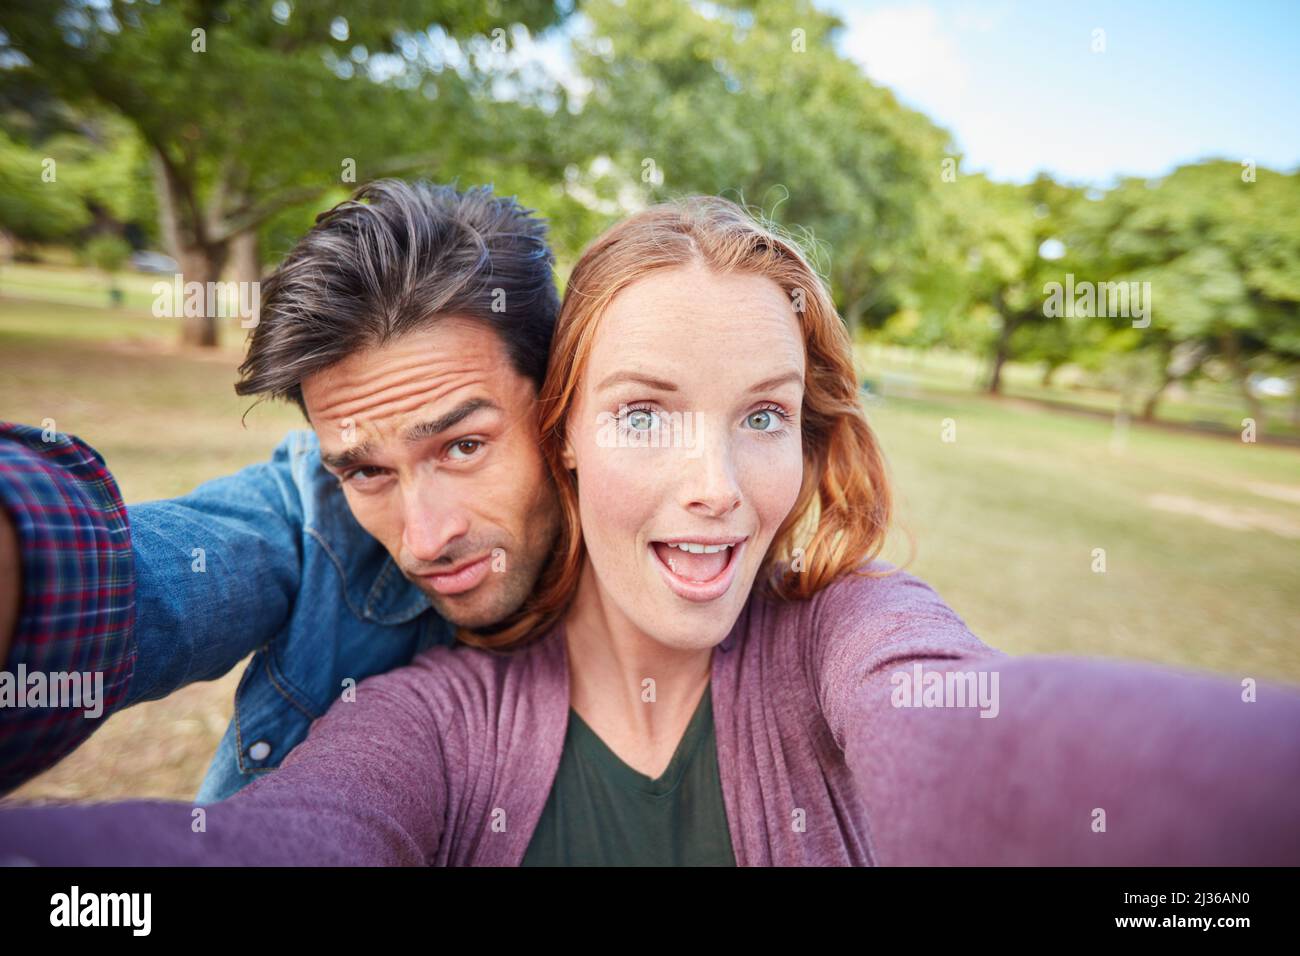 Wir verlieben uns immer noch jeden Tag. Porträt eines jungen Paares, das ein Selfie im Park gemacht hat. Stockfoto